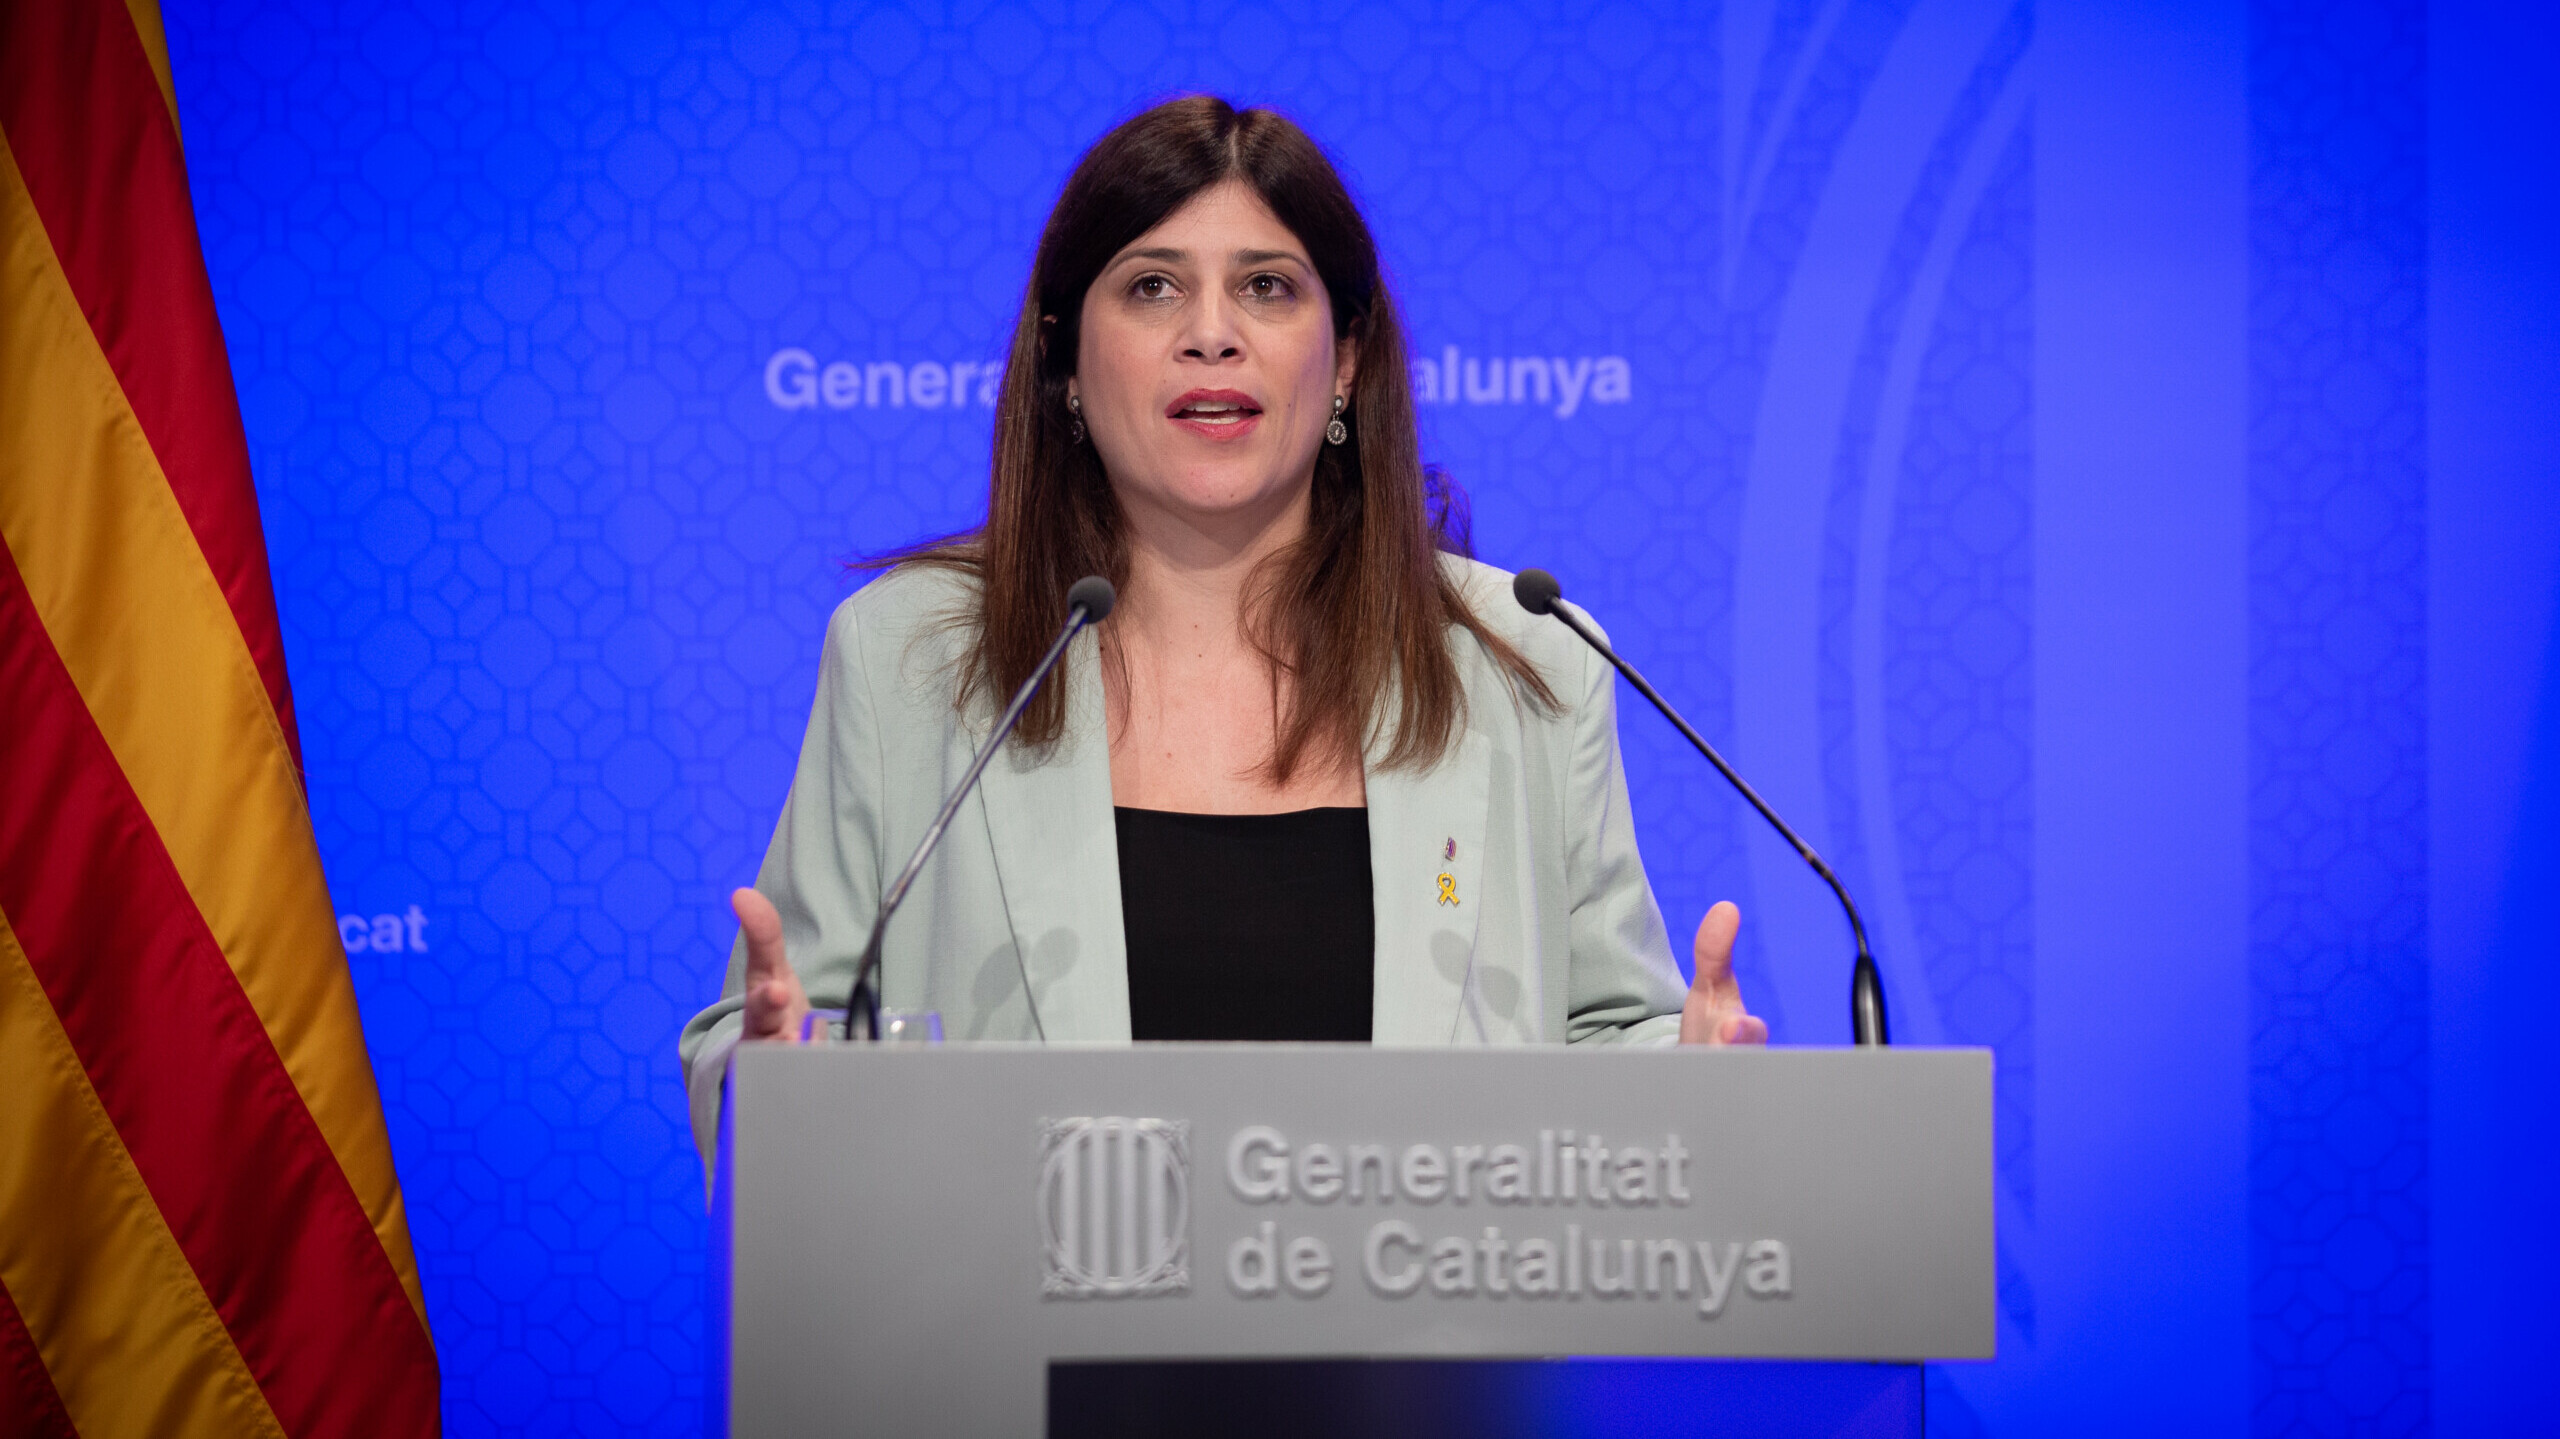 Una consejera de Cataluña llama "fascista" a la entidad que vela por el bilingüismo en la PAU